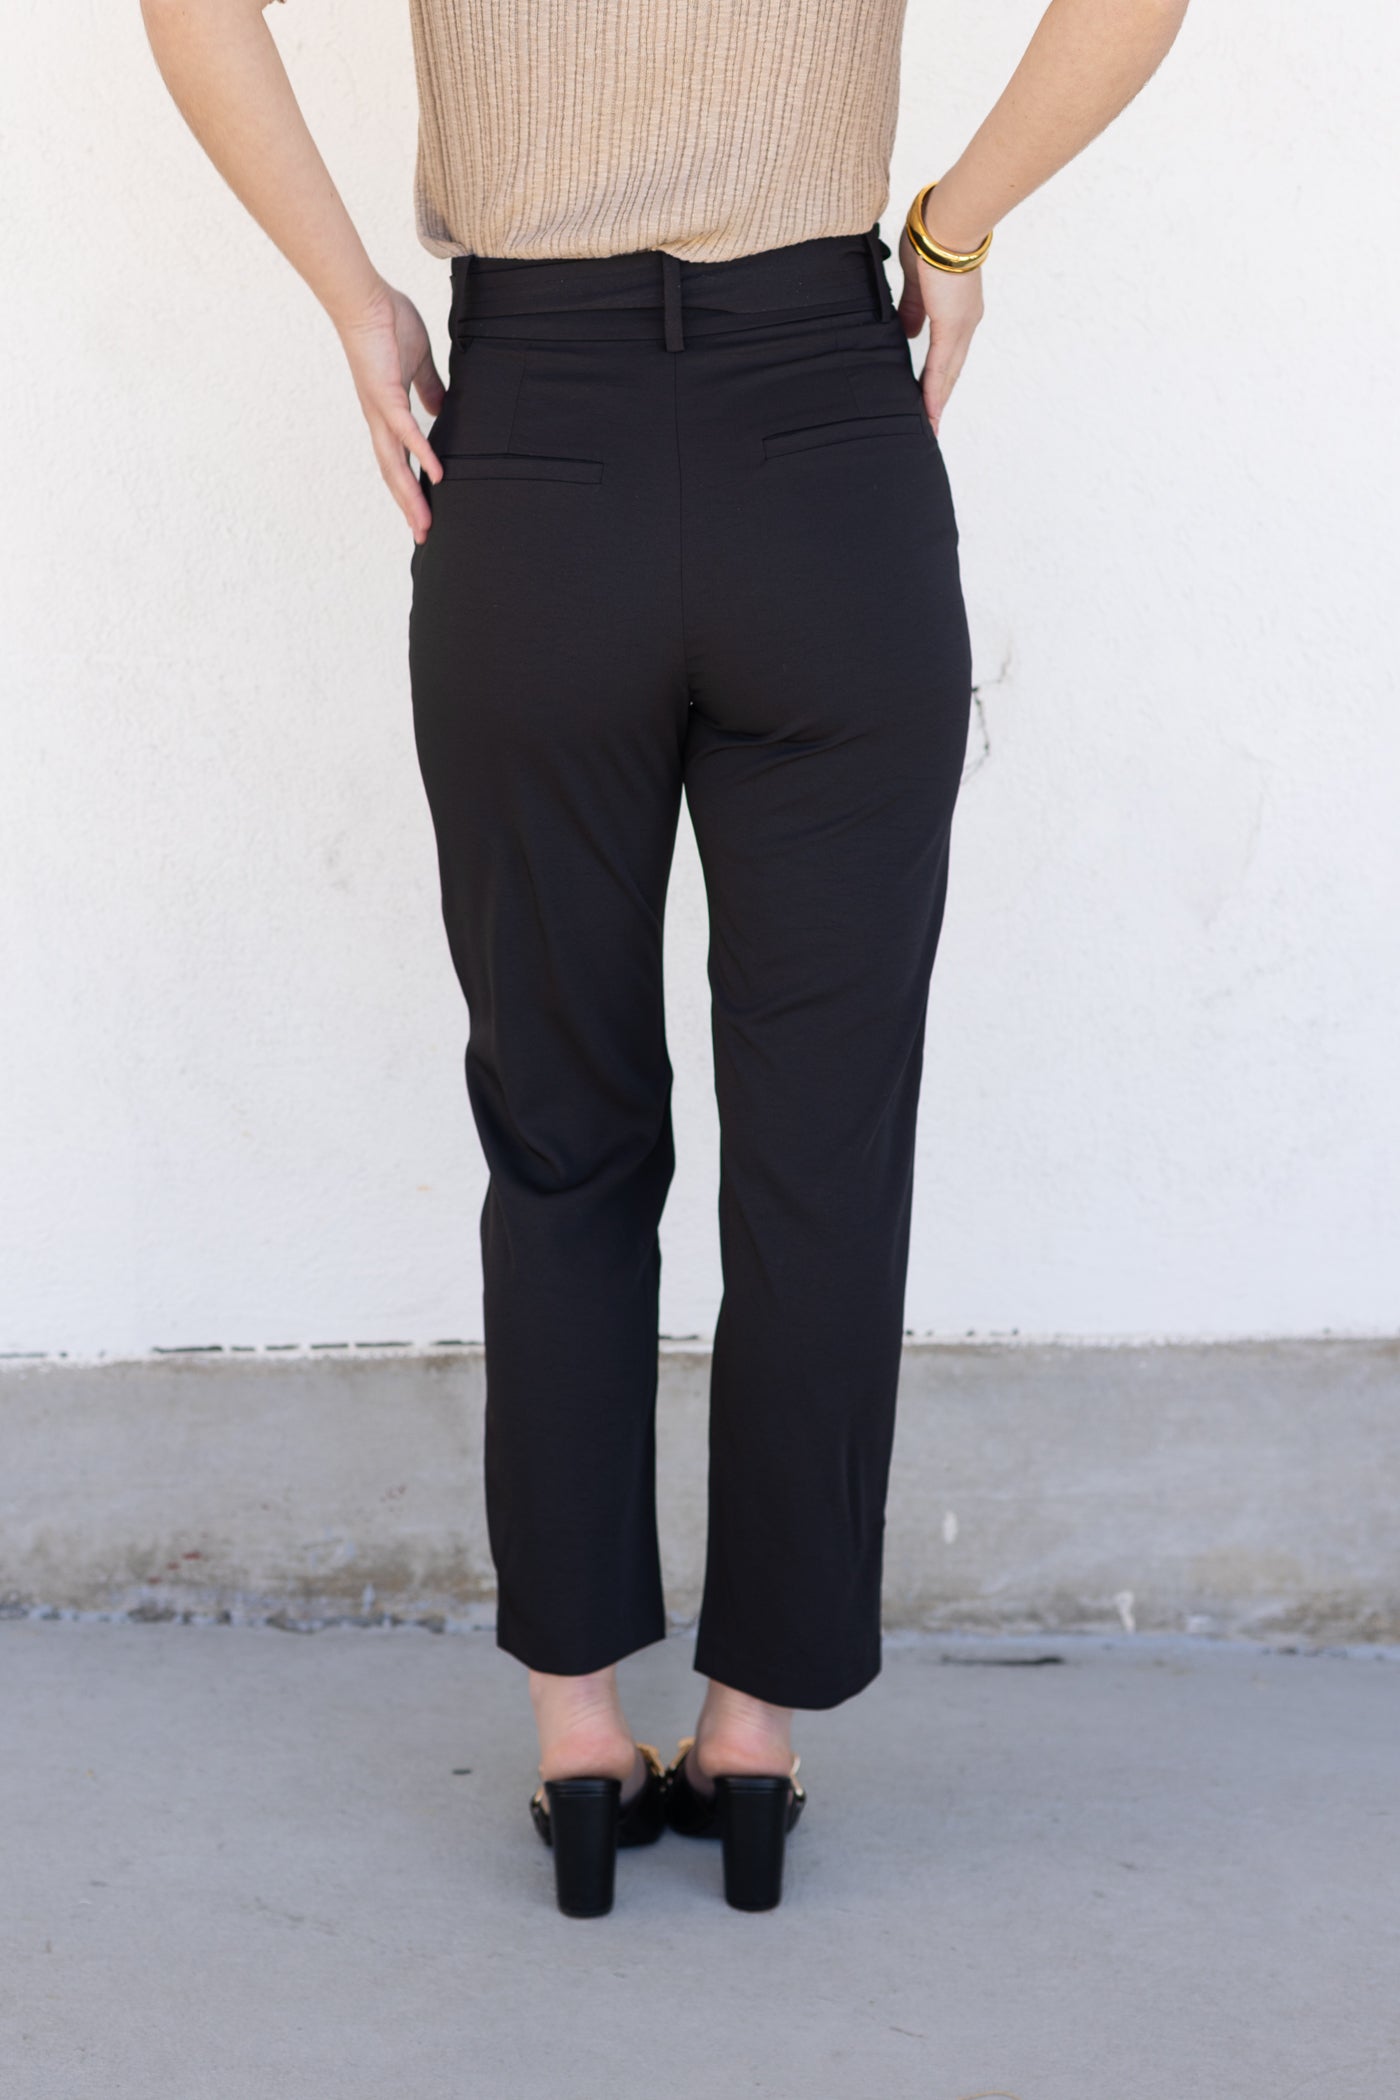 Meg & Margot Black Casual Pants Size XL - 74% off